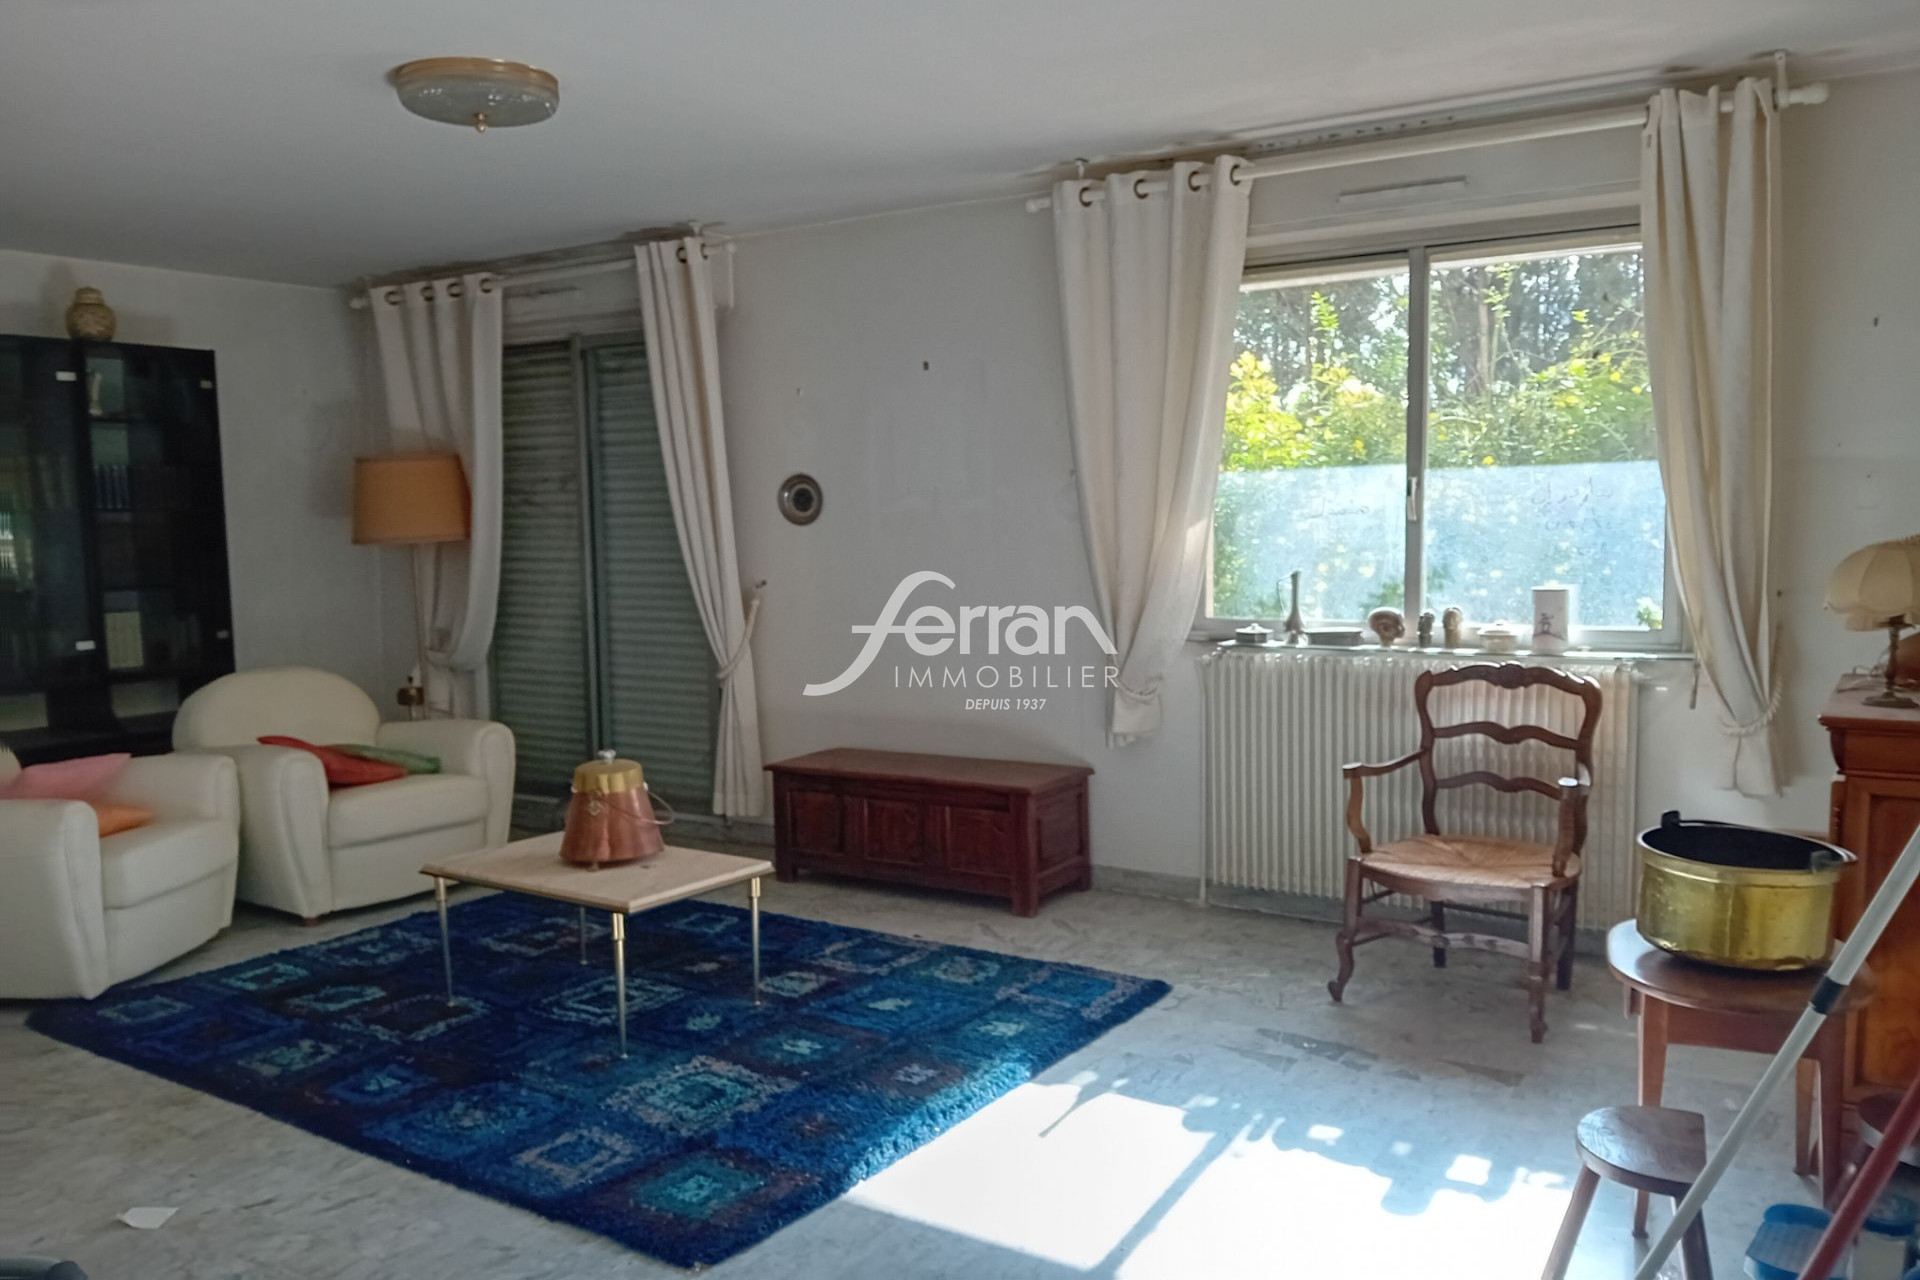 Vente Appartement 66m² à Draguignan (83300) - Ferran Immobilier